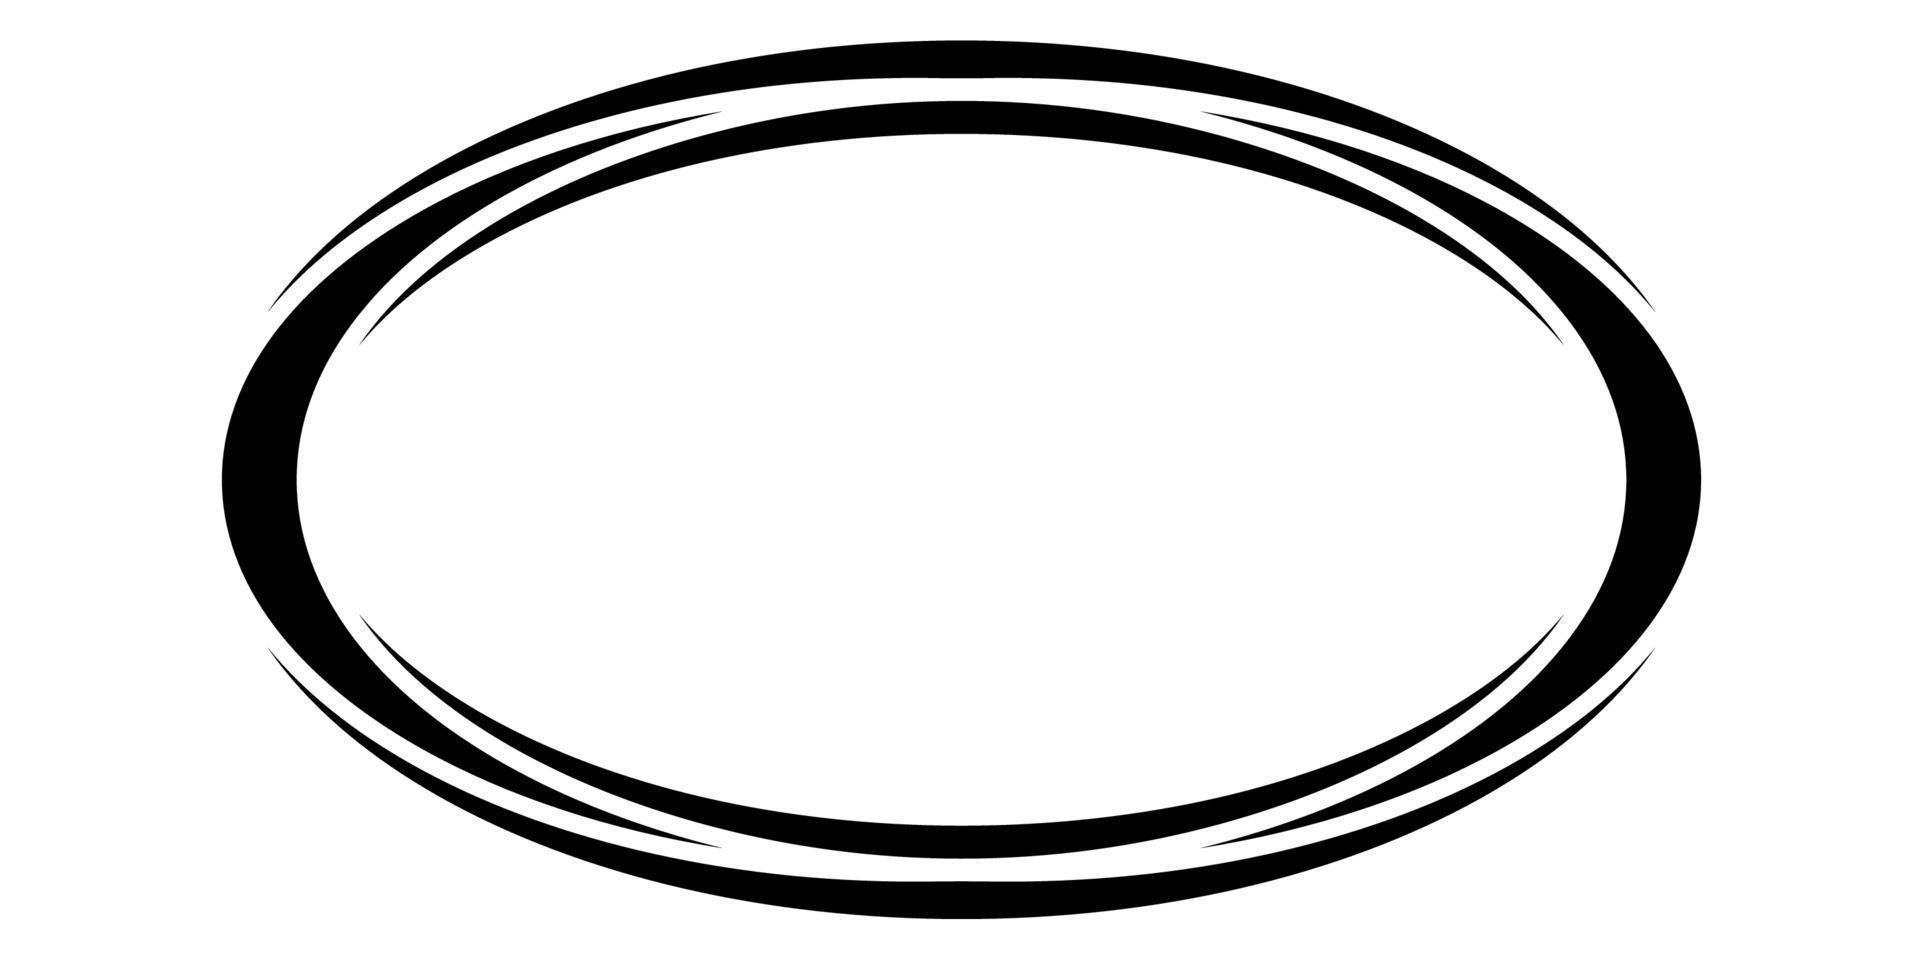 oval runda ram baner, gräns vektor freehand teckning, runda markörer